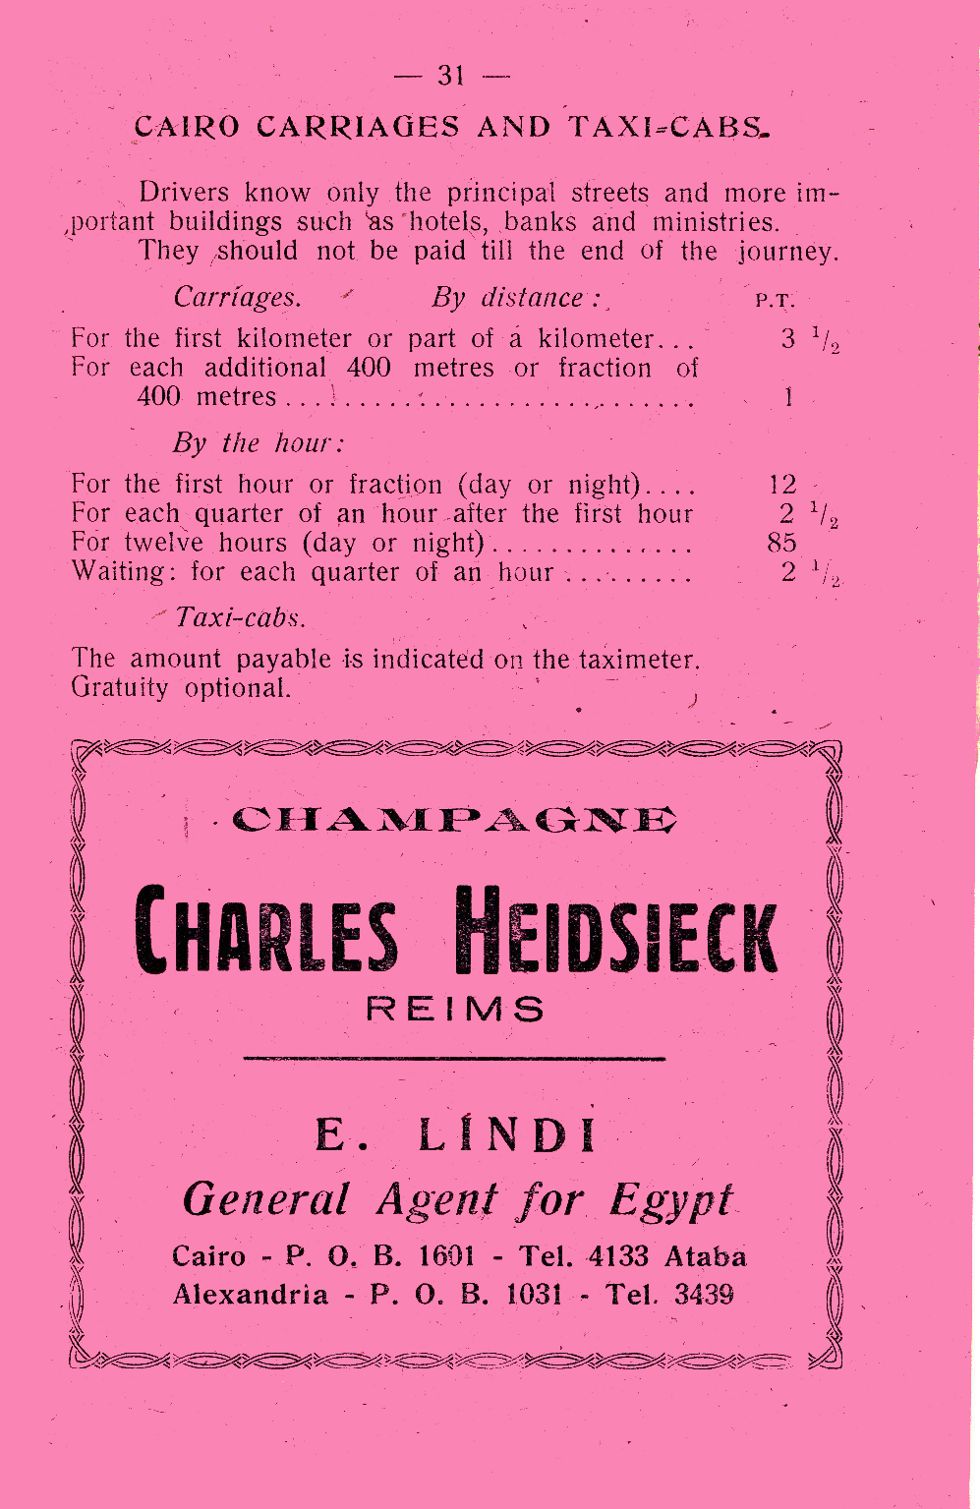 Charles Heidsieck advertisement